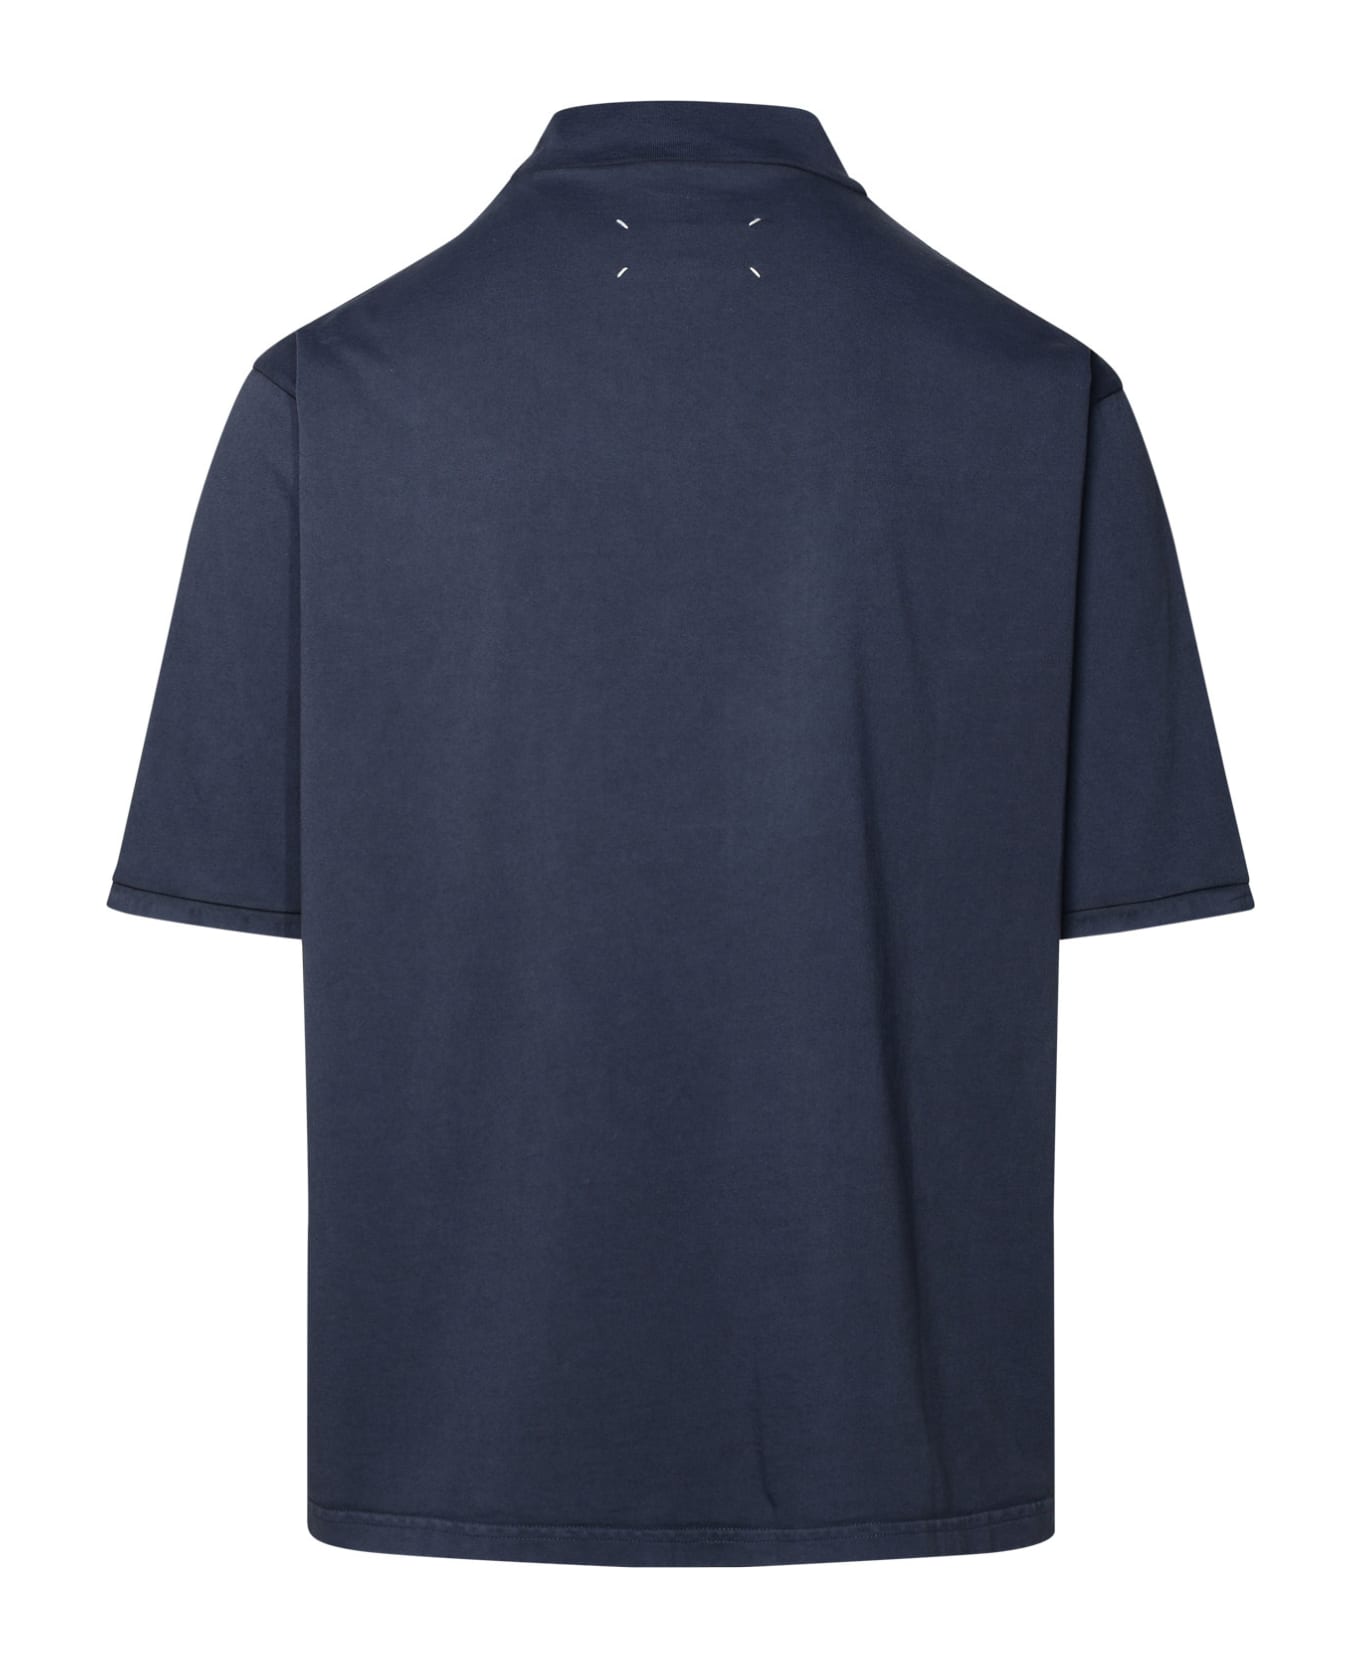 Maison Margiela Cotton T-shirt - Blue